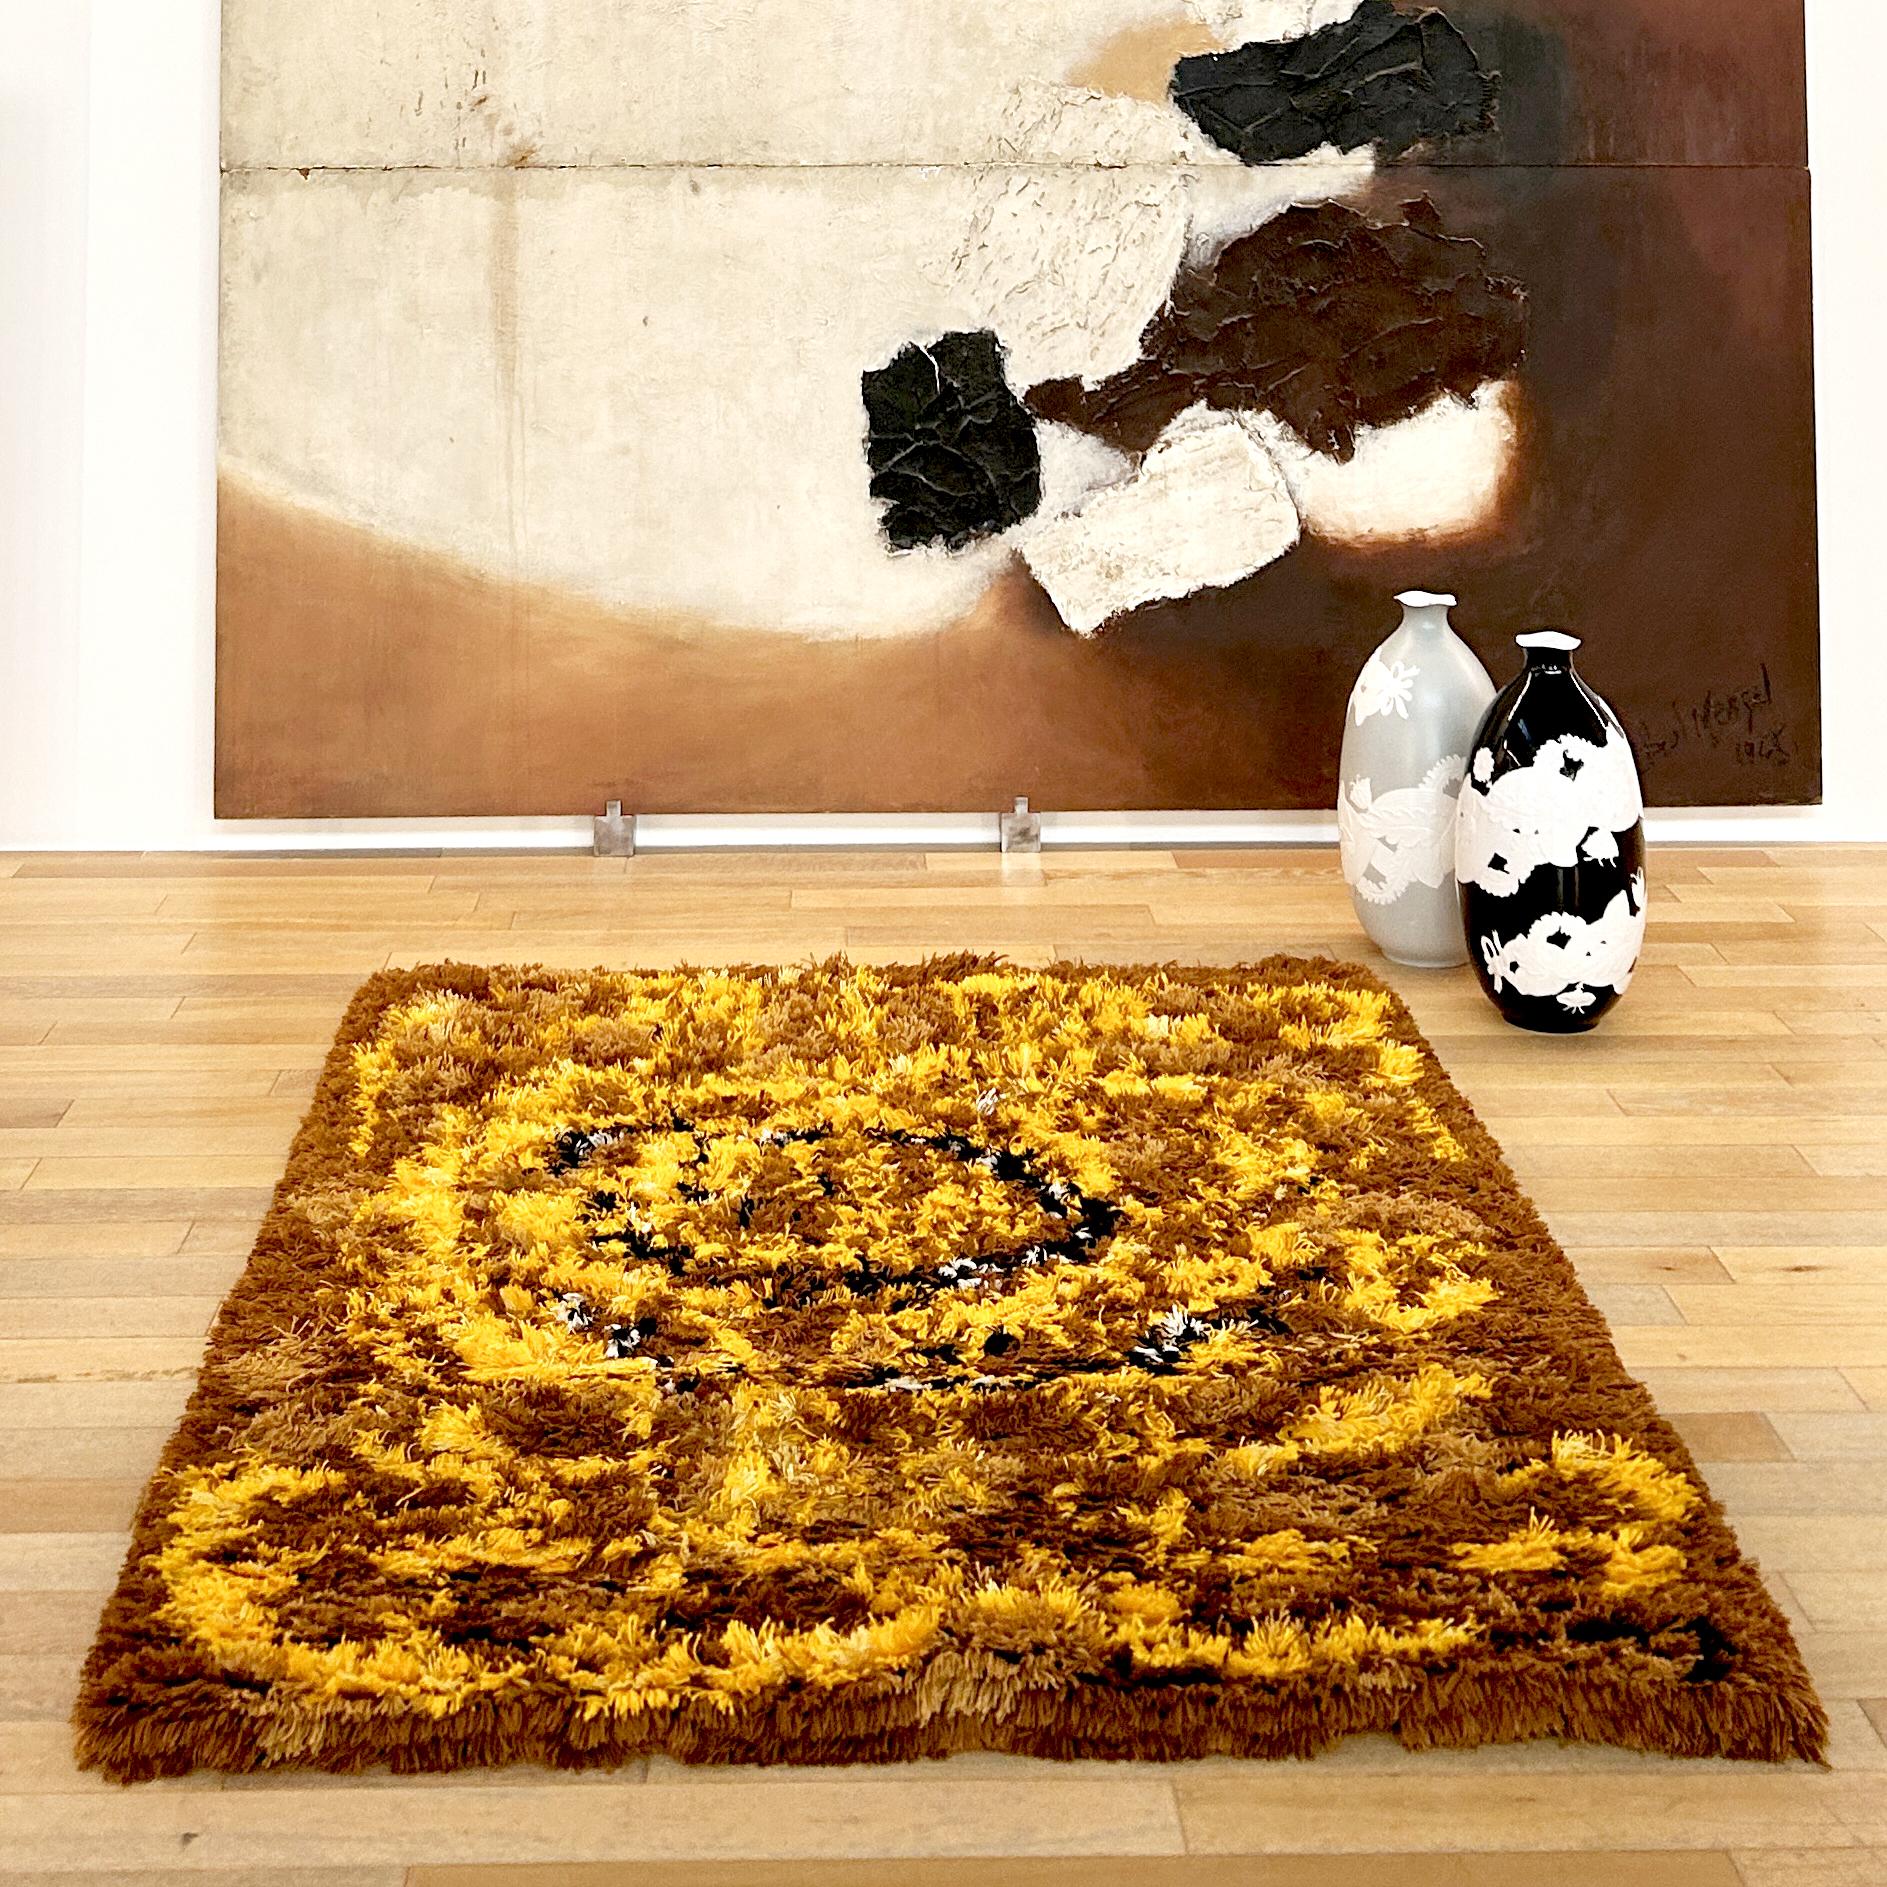 Teppich aus einer Acryl-Wollmischung, hergestellt von Dal Lago, Venedig, 1960er/70er Jahre. Informelle Dekoration auf der Basis von Braun und Beige, mit Gelb, Schwarz und Weiß. Stock, nie benutzt, der Teppich wurde gereinigt und ist daher